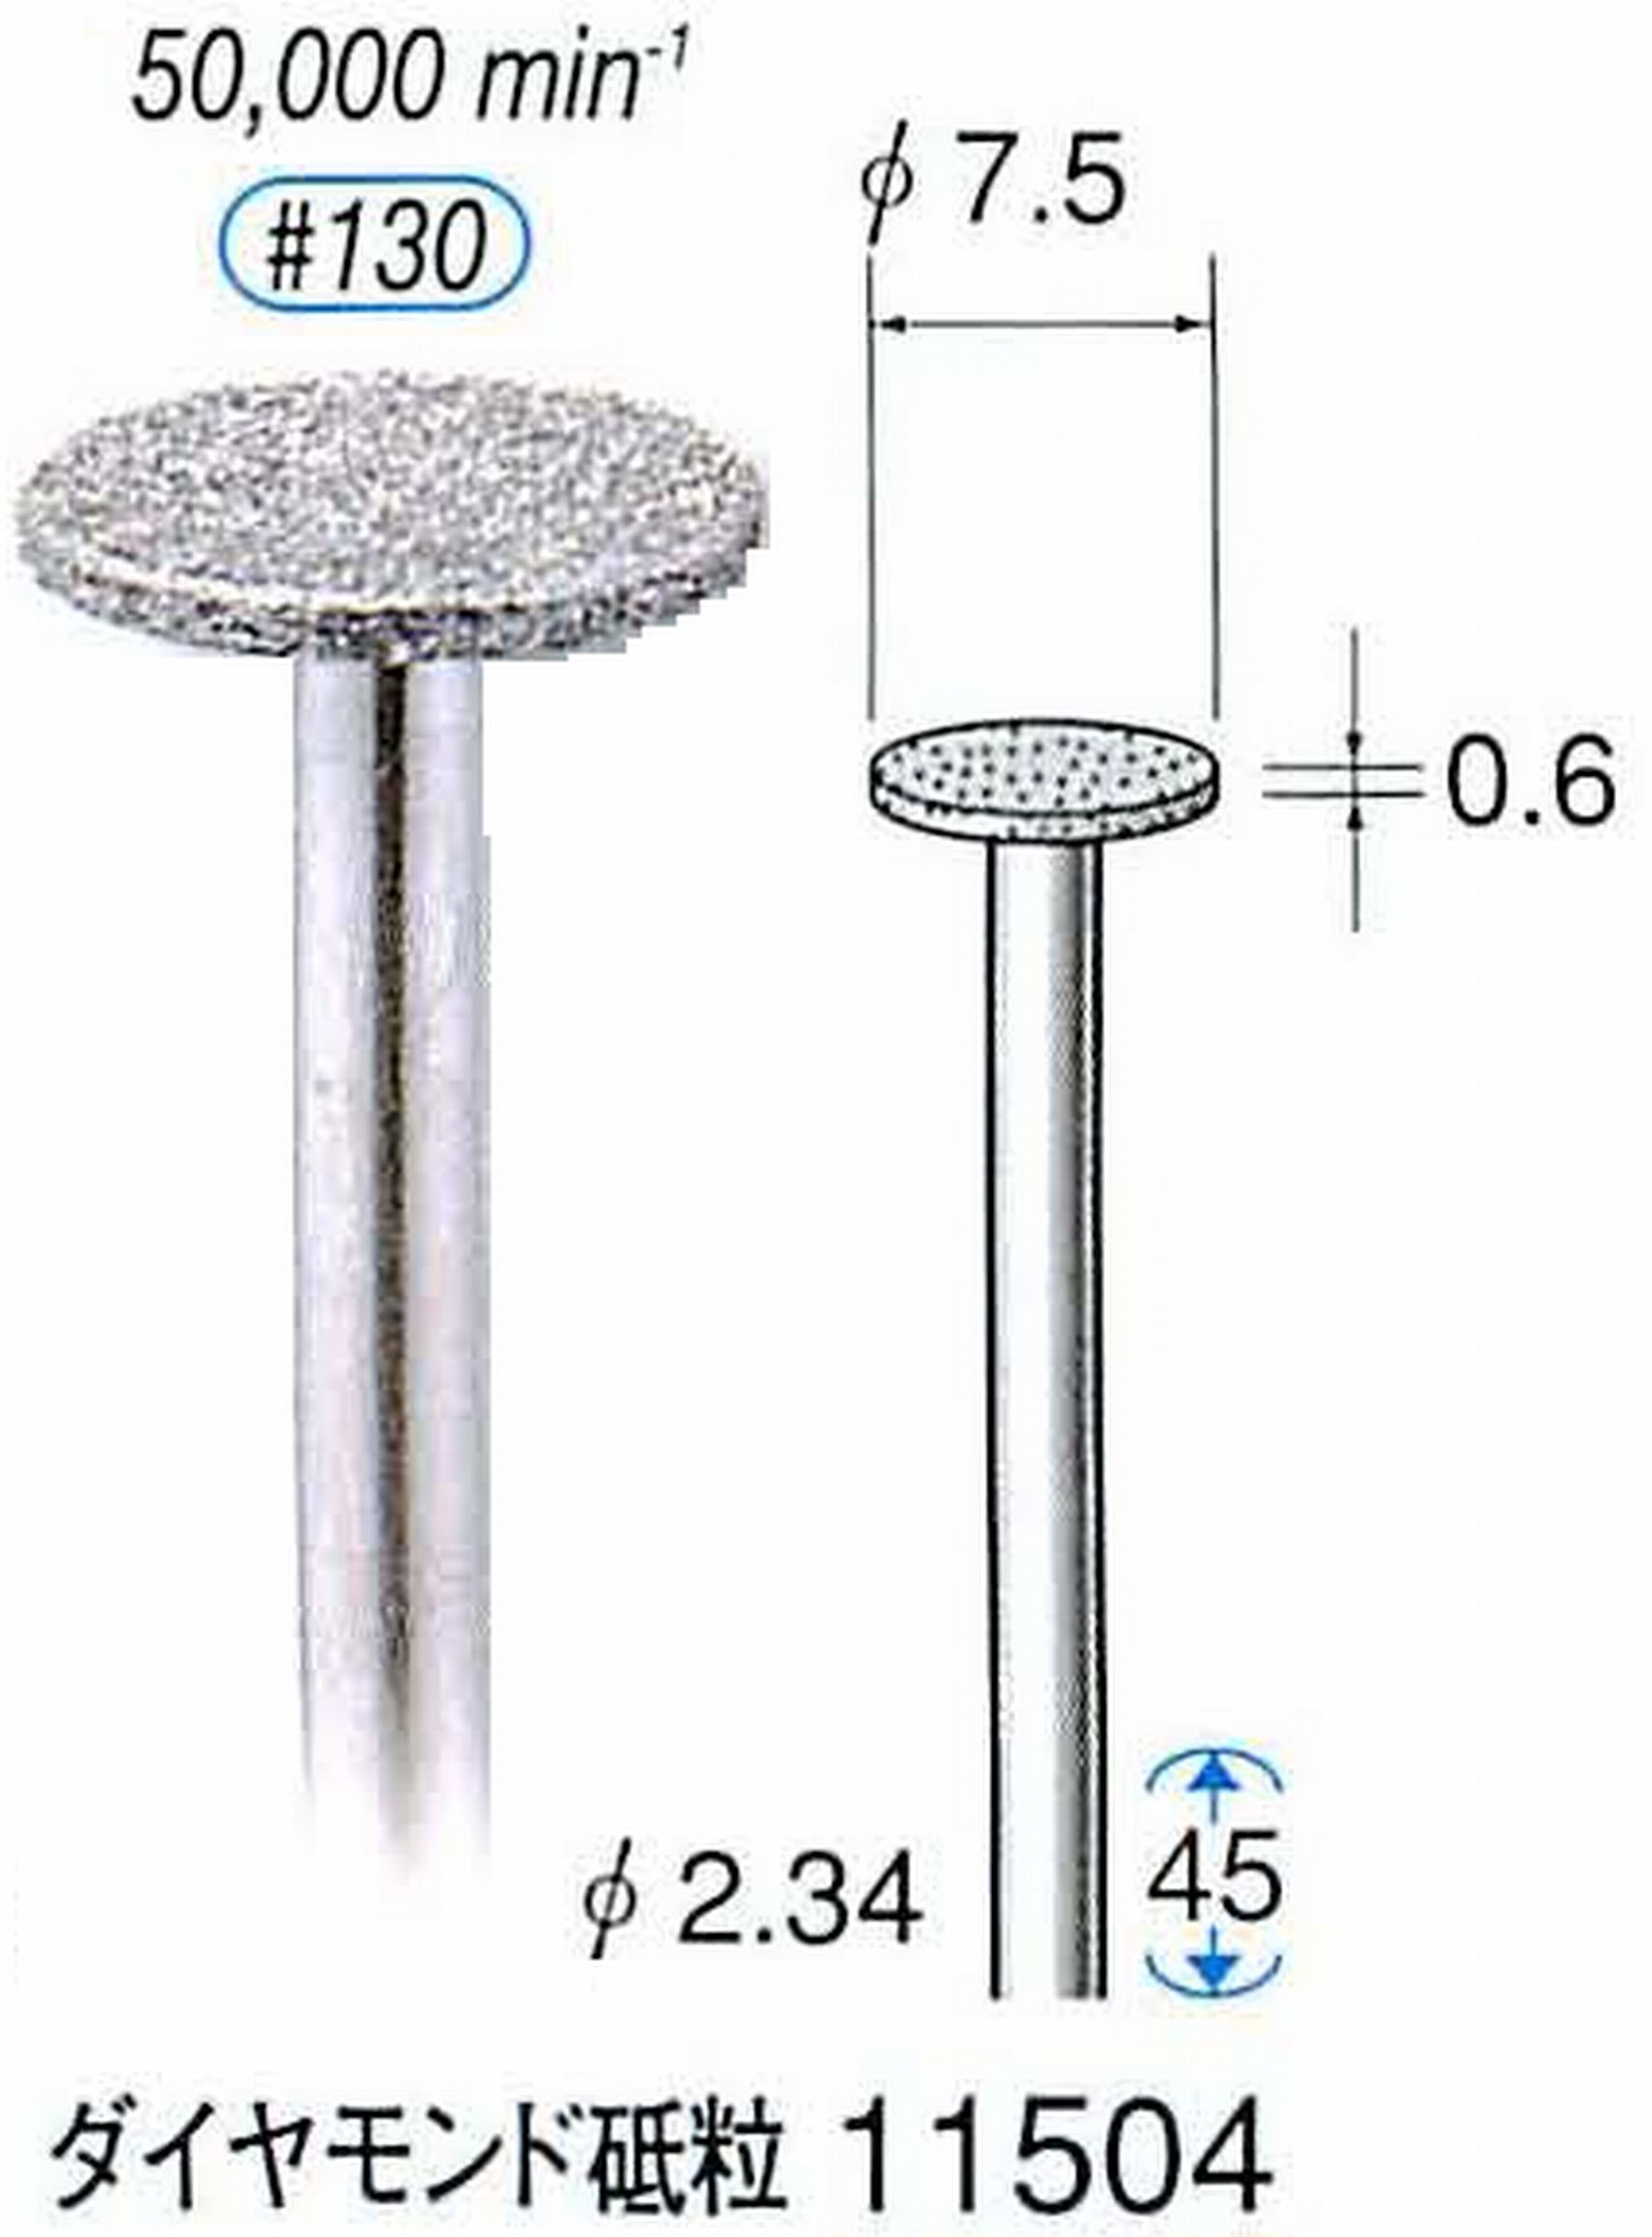 ナカニシ/NAKANISHI 電着ダイヤモンドバー ダイヤモンド砥粒 軸径(シャンク)φ2.34mm 11504